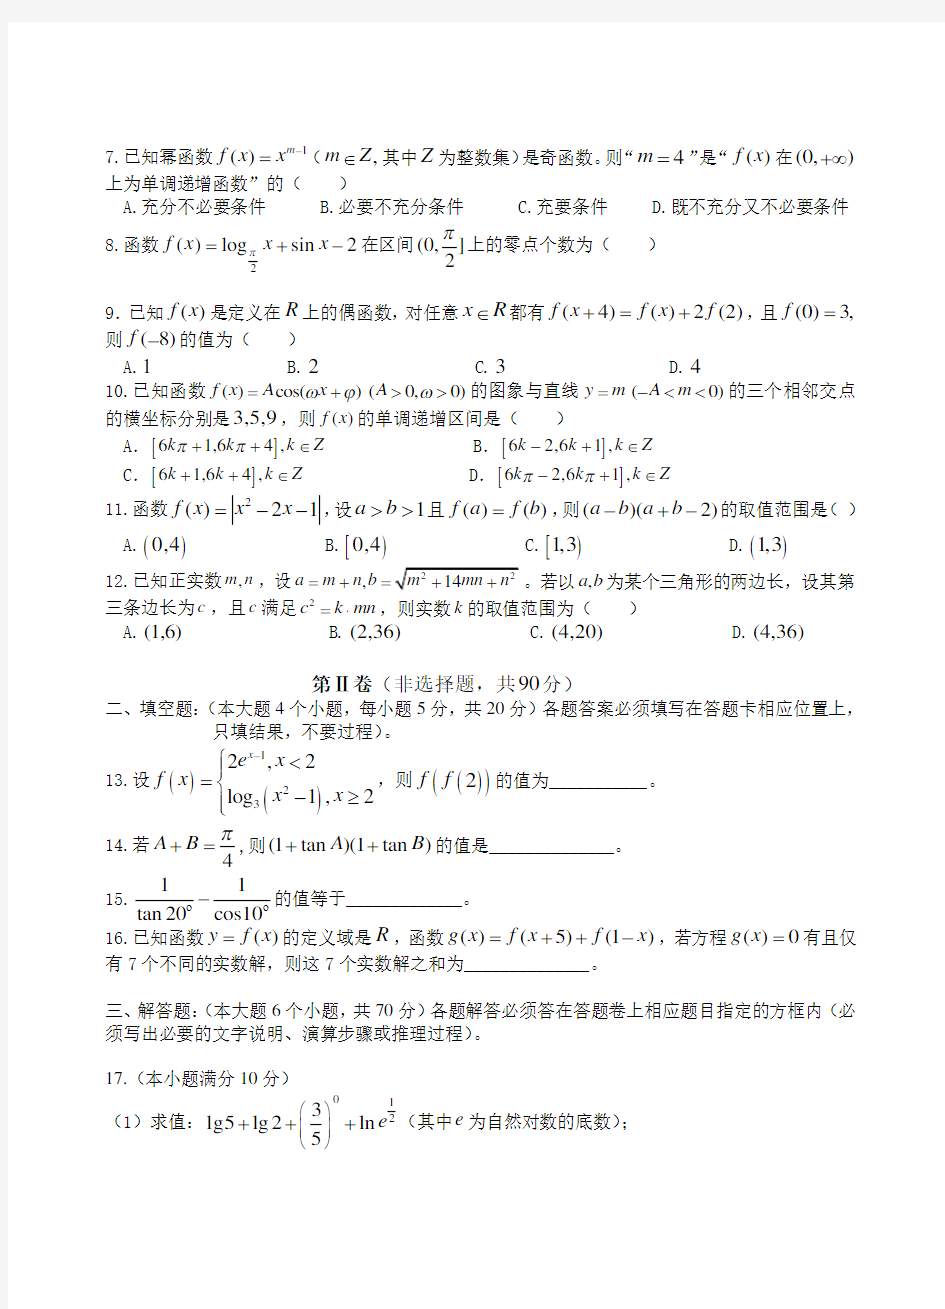 2016年重庆一中高2018年度级高一上期期末专业考试数学试卷内容答案